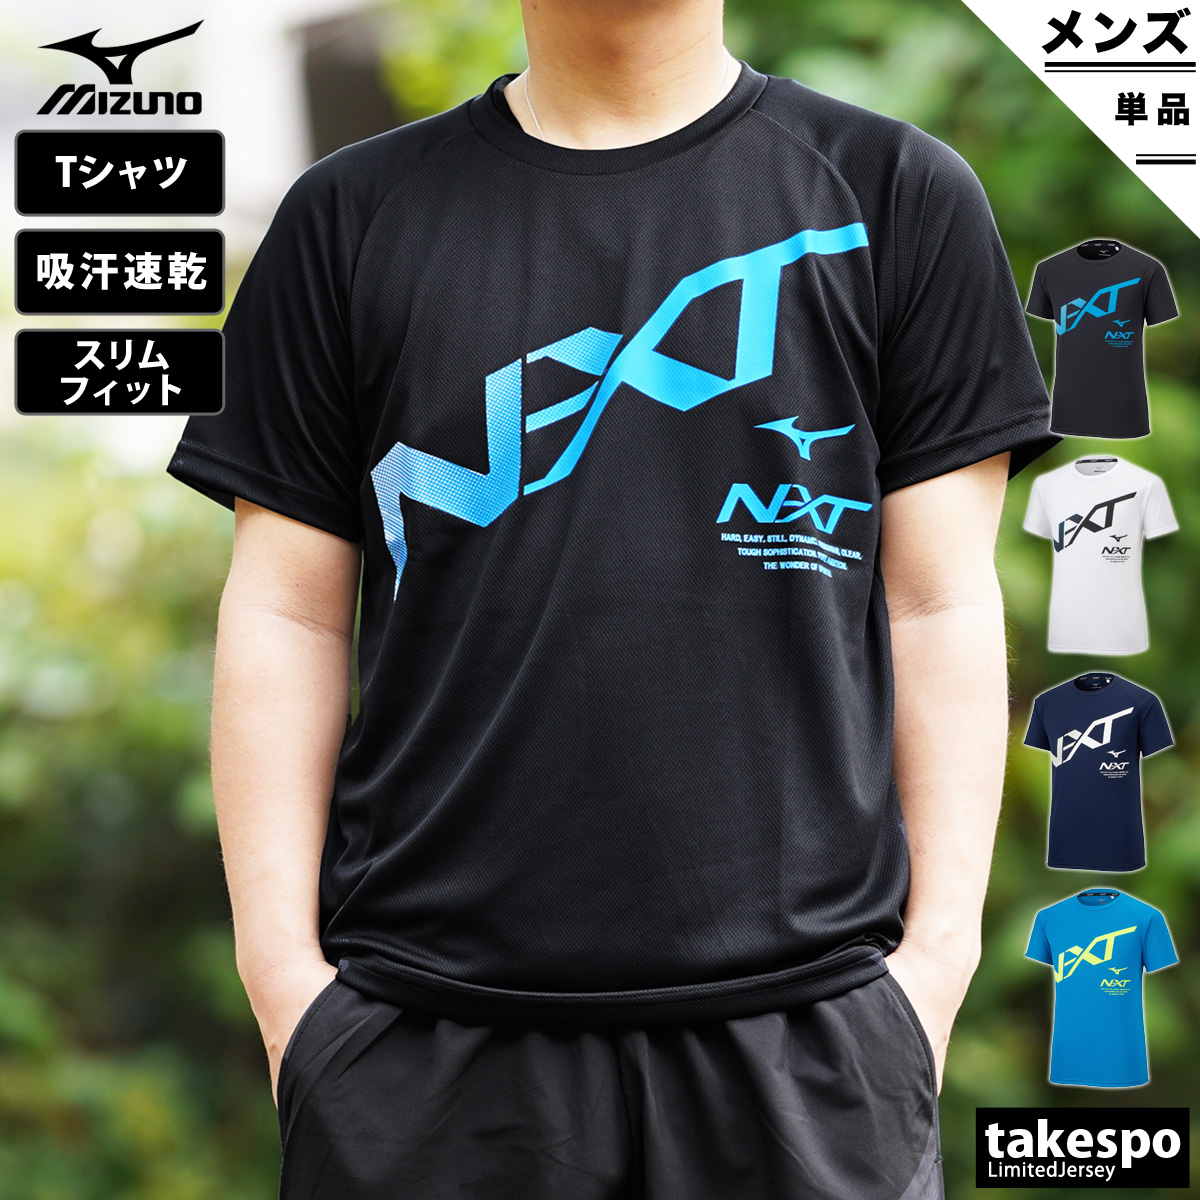 ミズノ Tシャツ 上 メンズ Mizuno 半袖 吸汗速乾 ドライ ビッグロゴ N-XT 32JA2215| 大きいサイズ 有 スポーツウェア  トレーニングウェア ドライ 速乾 | 限定ジャージのタケスポ